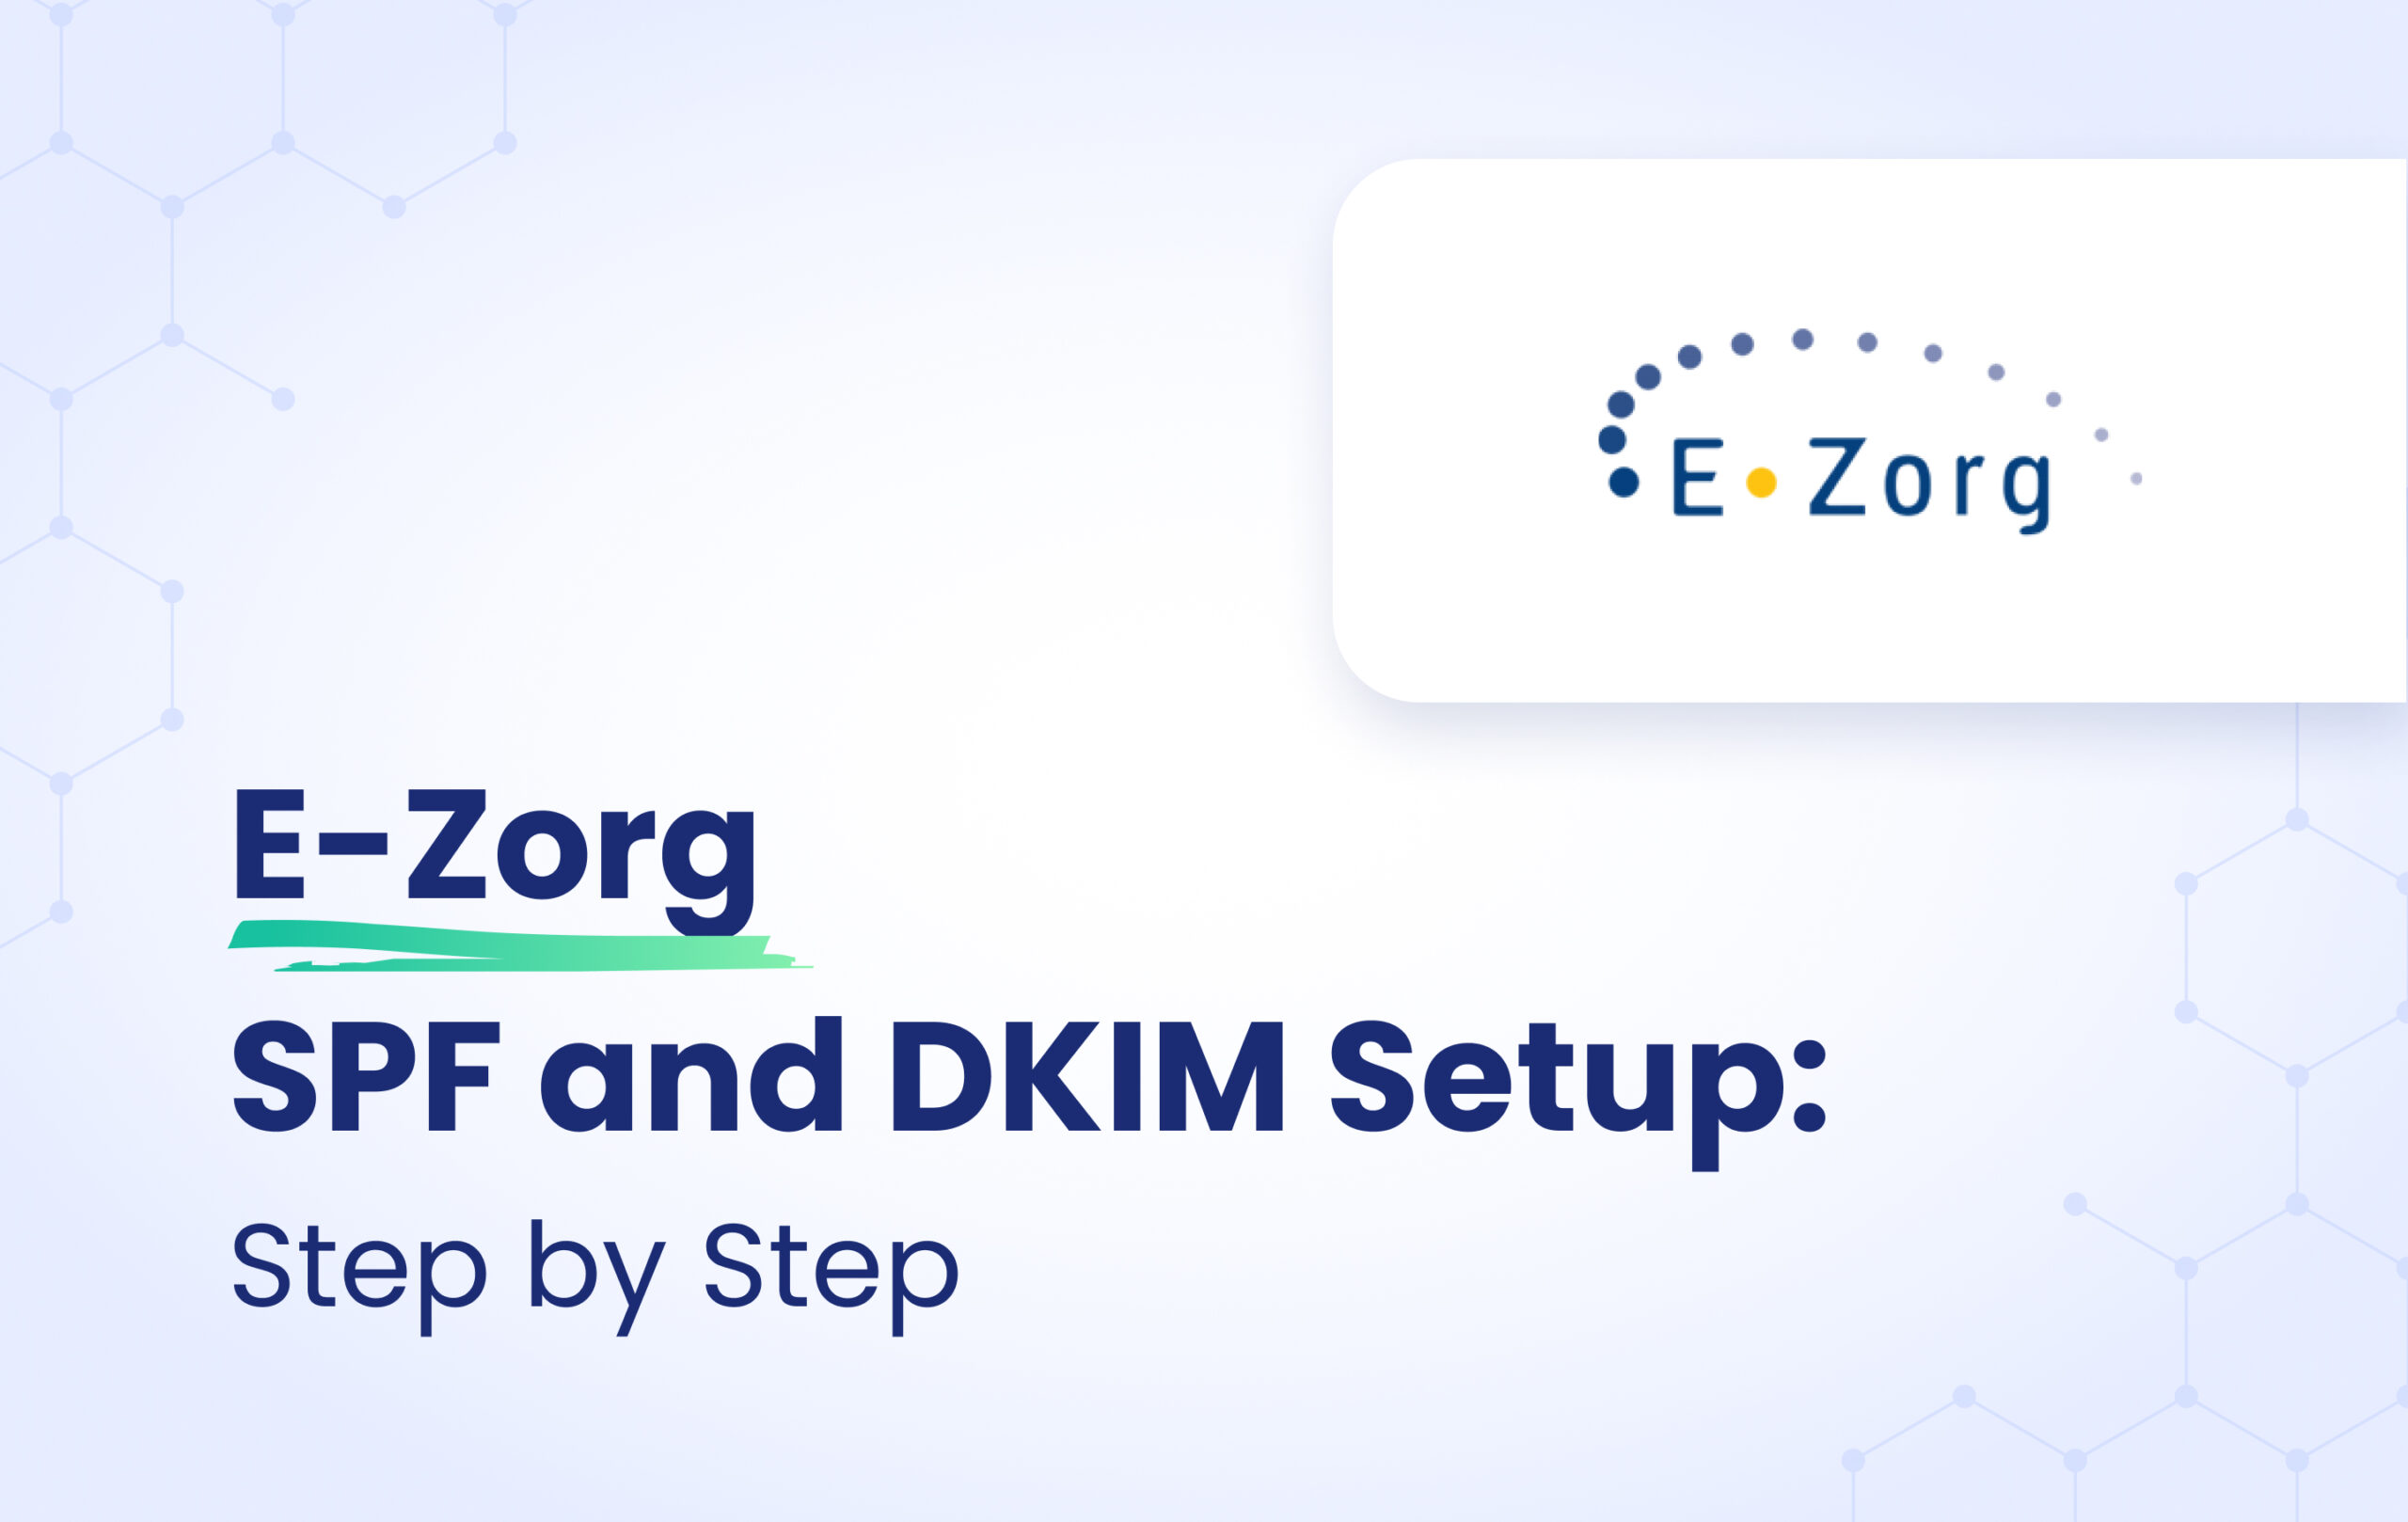 E-Zorg SPF and DKIM configuration